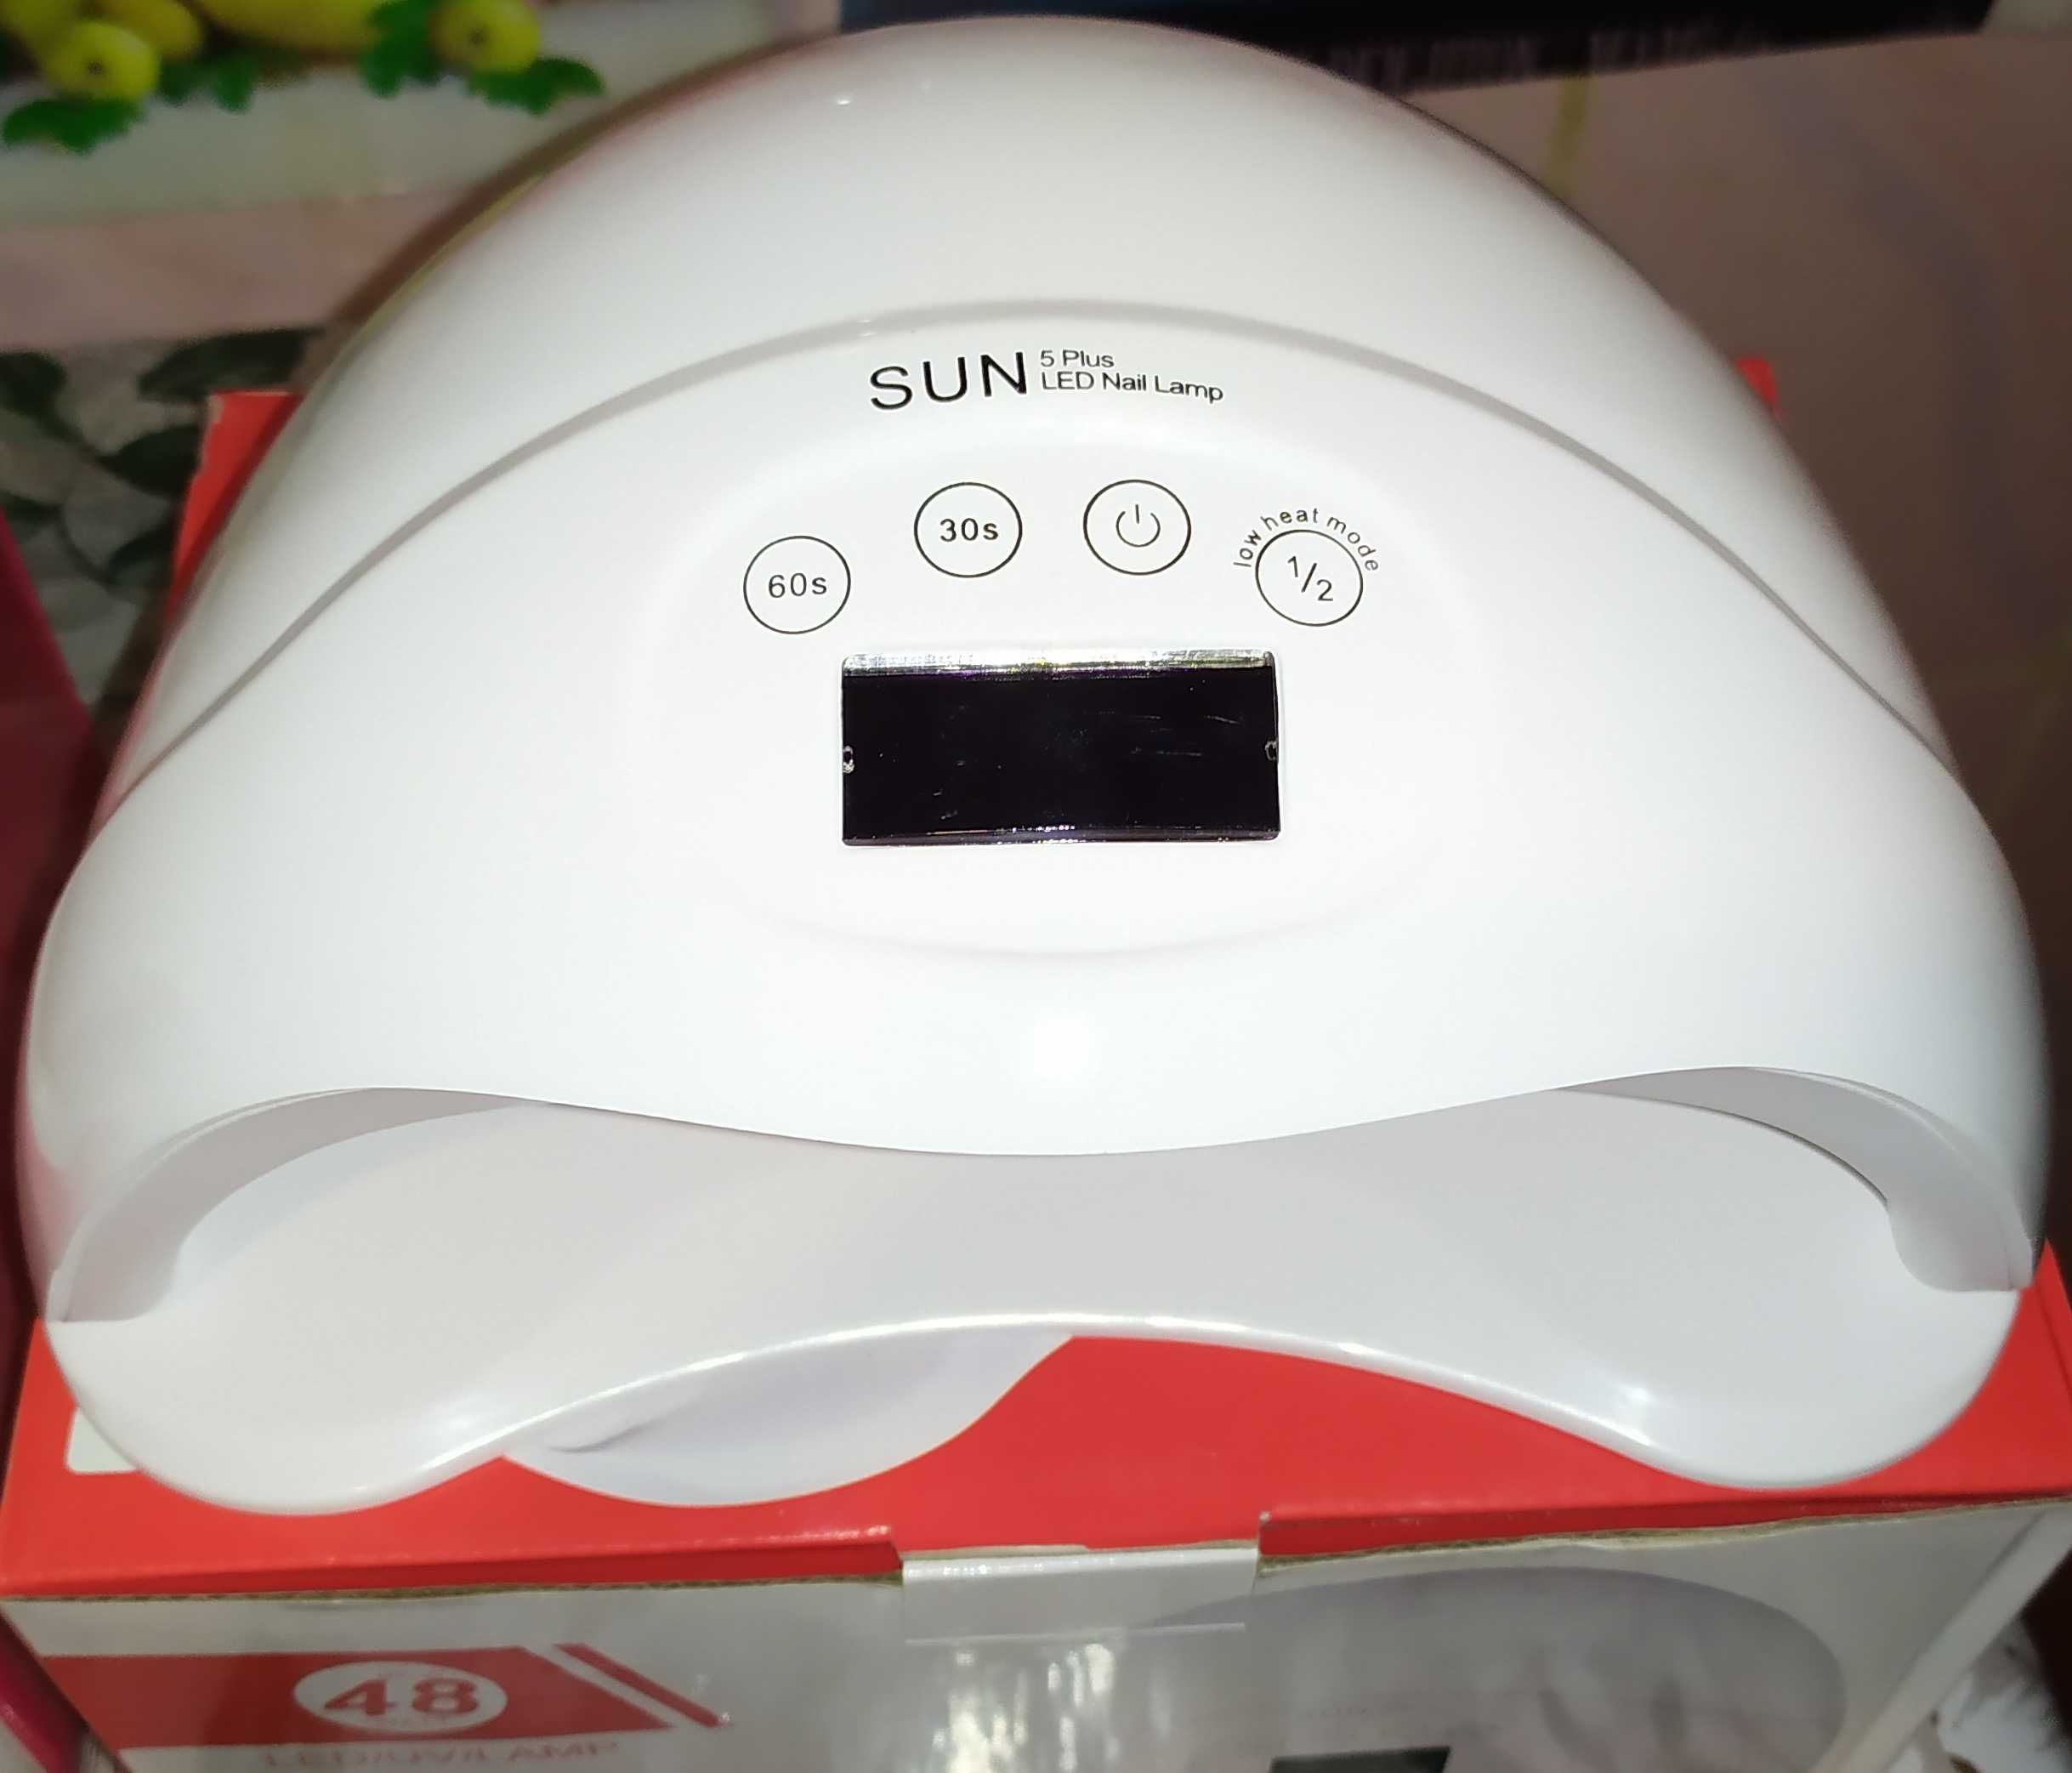 Лампа SUN 5. LED и UV ультрафиолетовая для гелиевого покрытия. НОВАЯ.